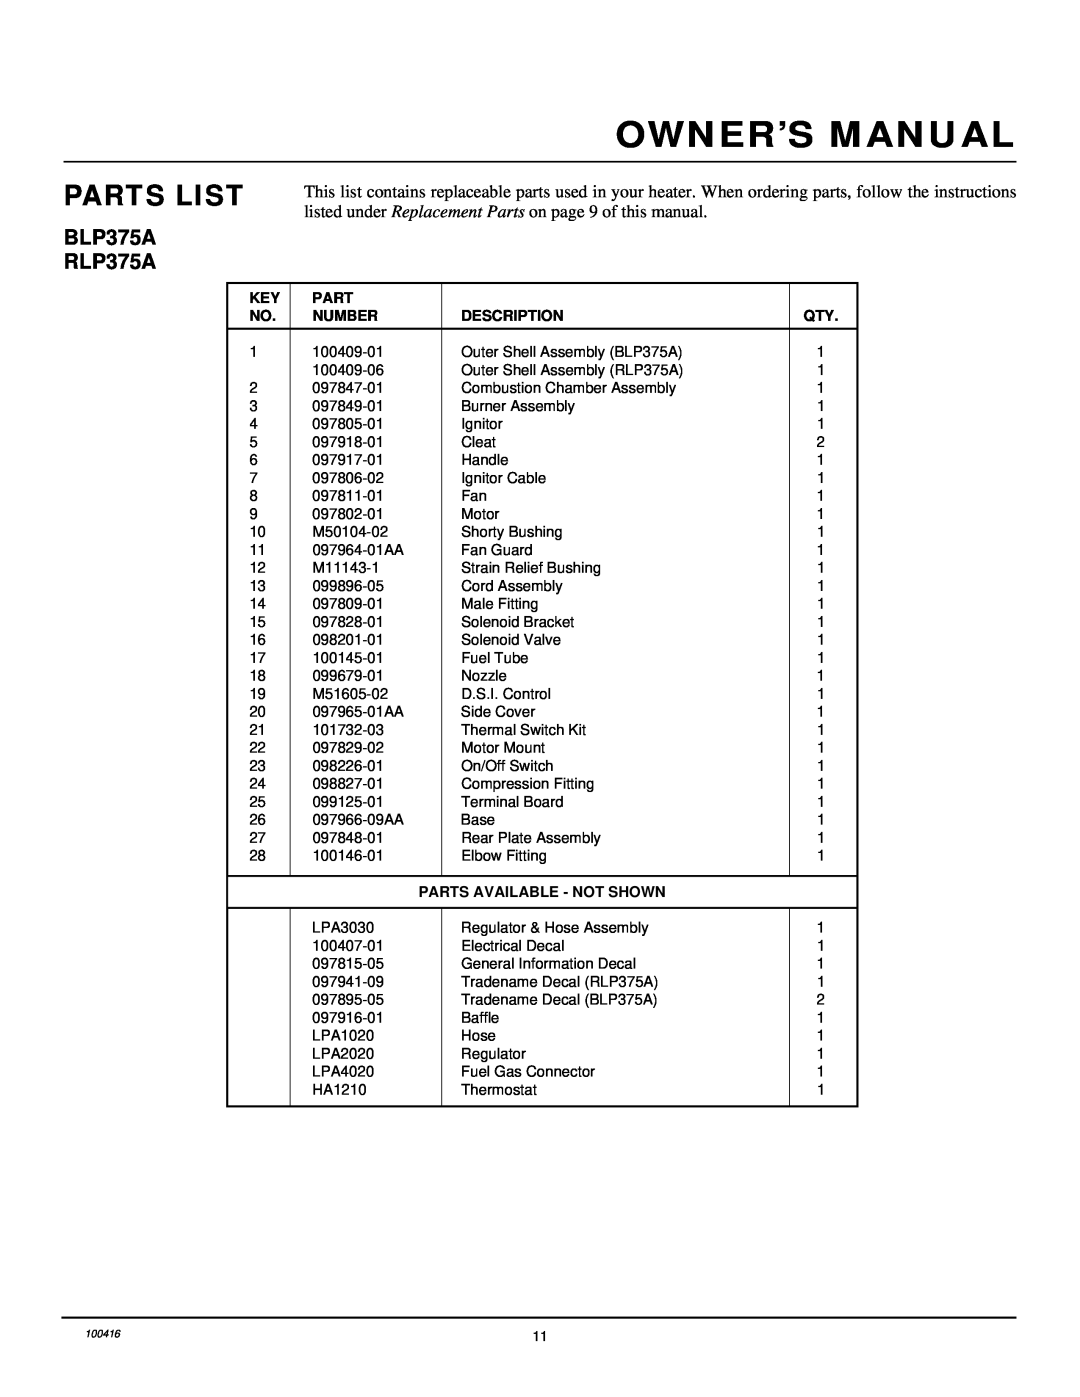 Desa RLP375A, BLP375A owner manual Parts List, Number, Description, Parts Available - Not Shown 